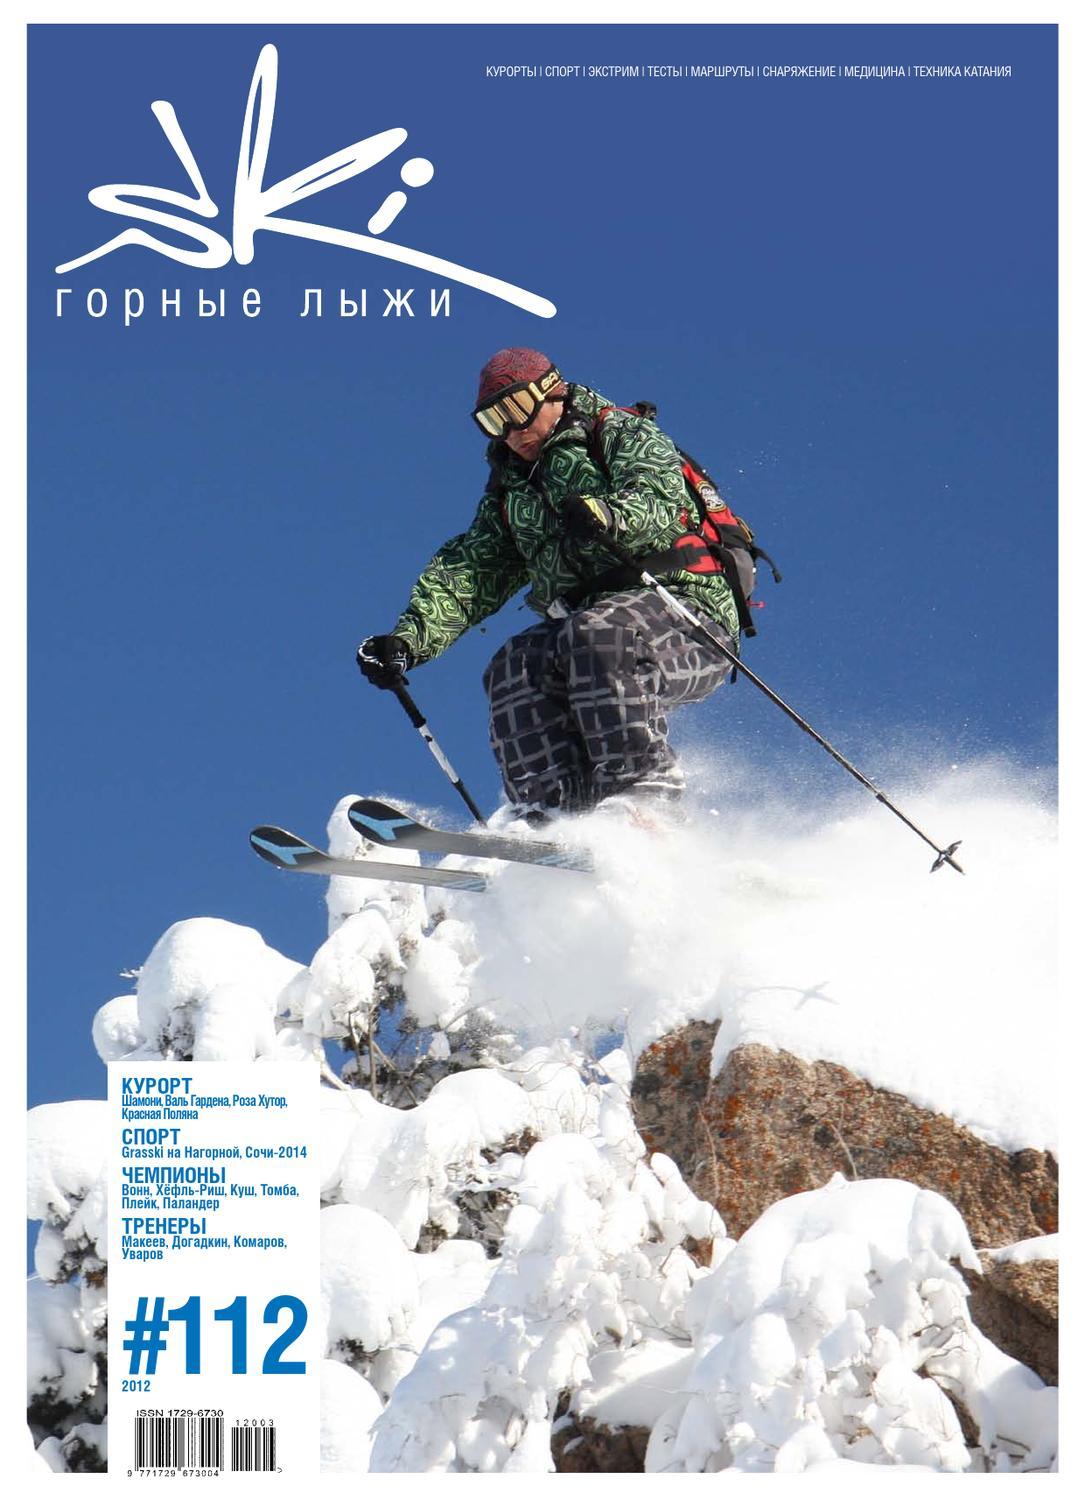 해외 스키 - 교통 규칙, 필수 장비. 가이드